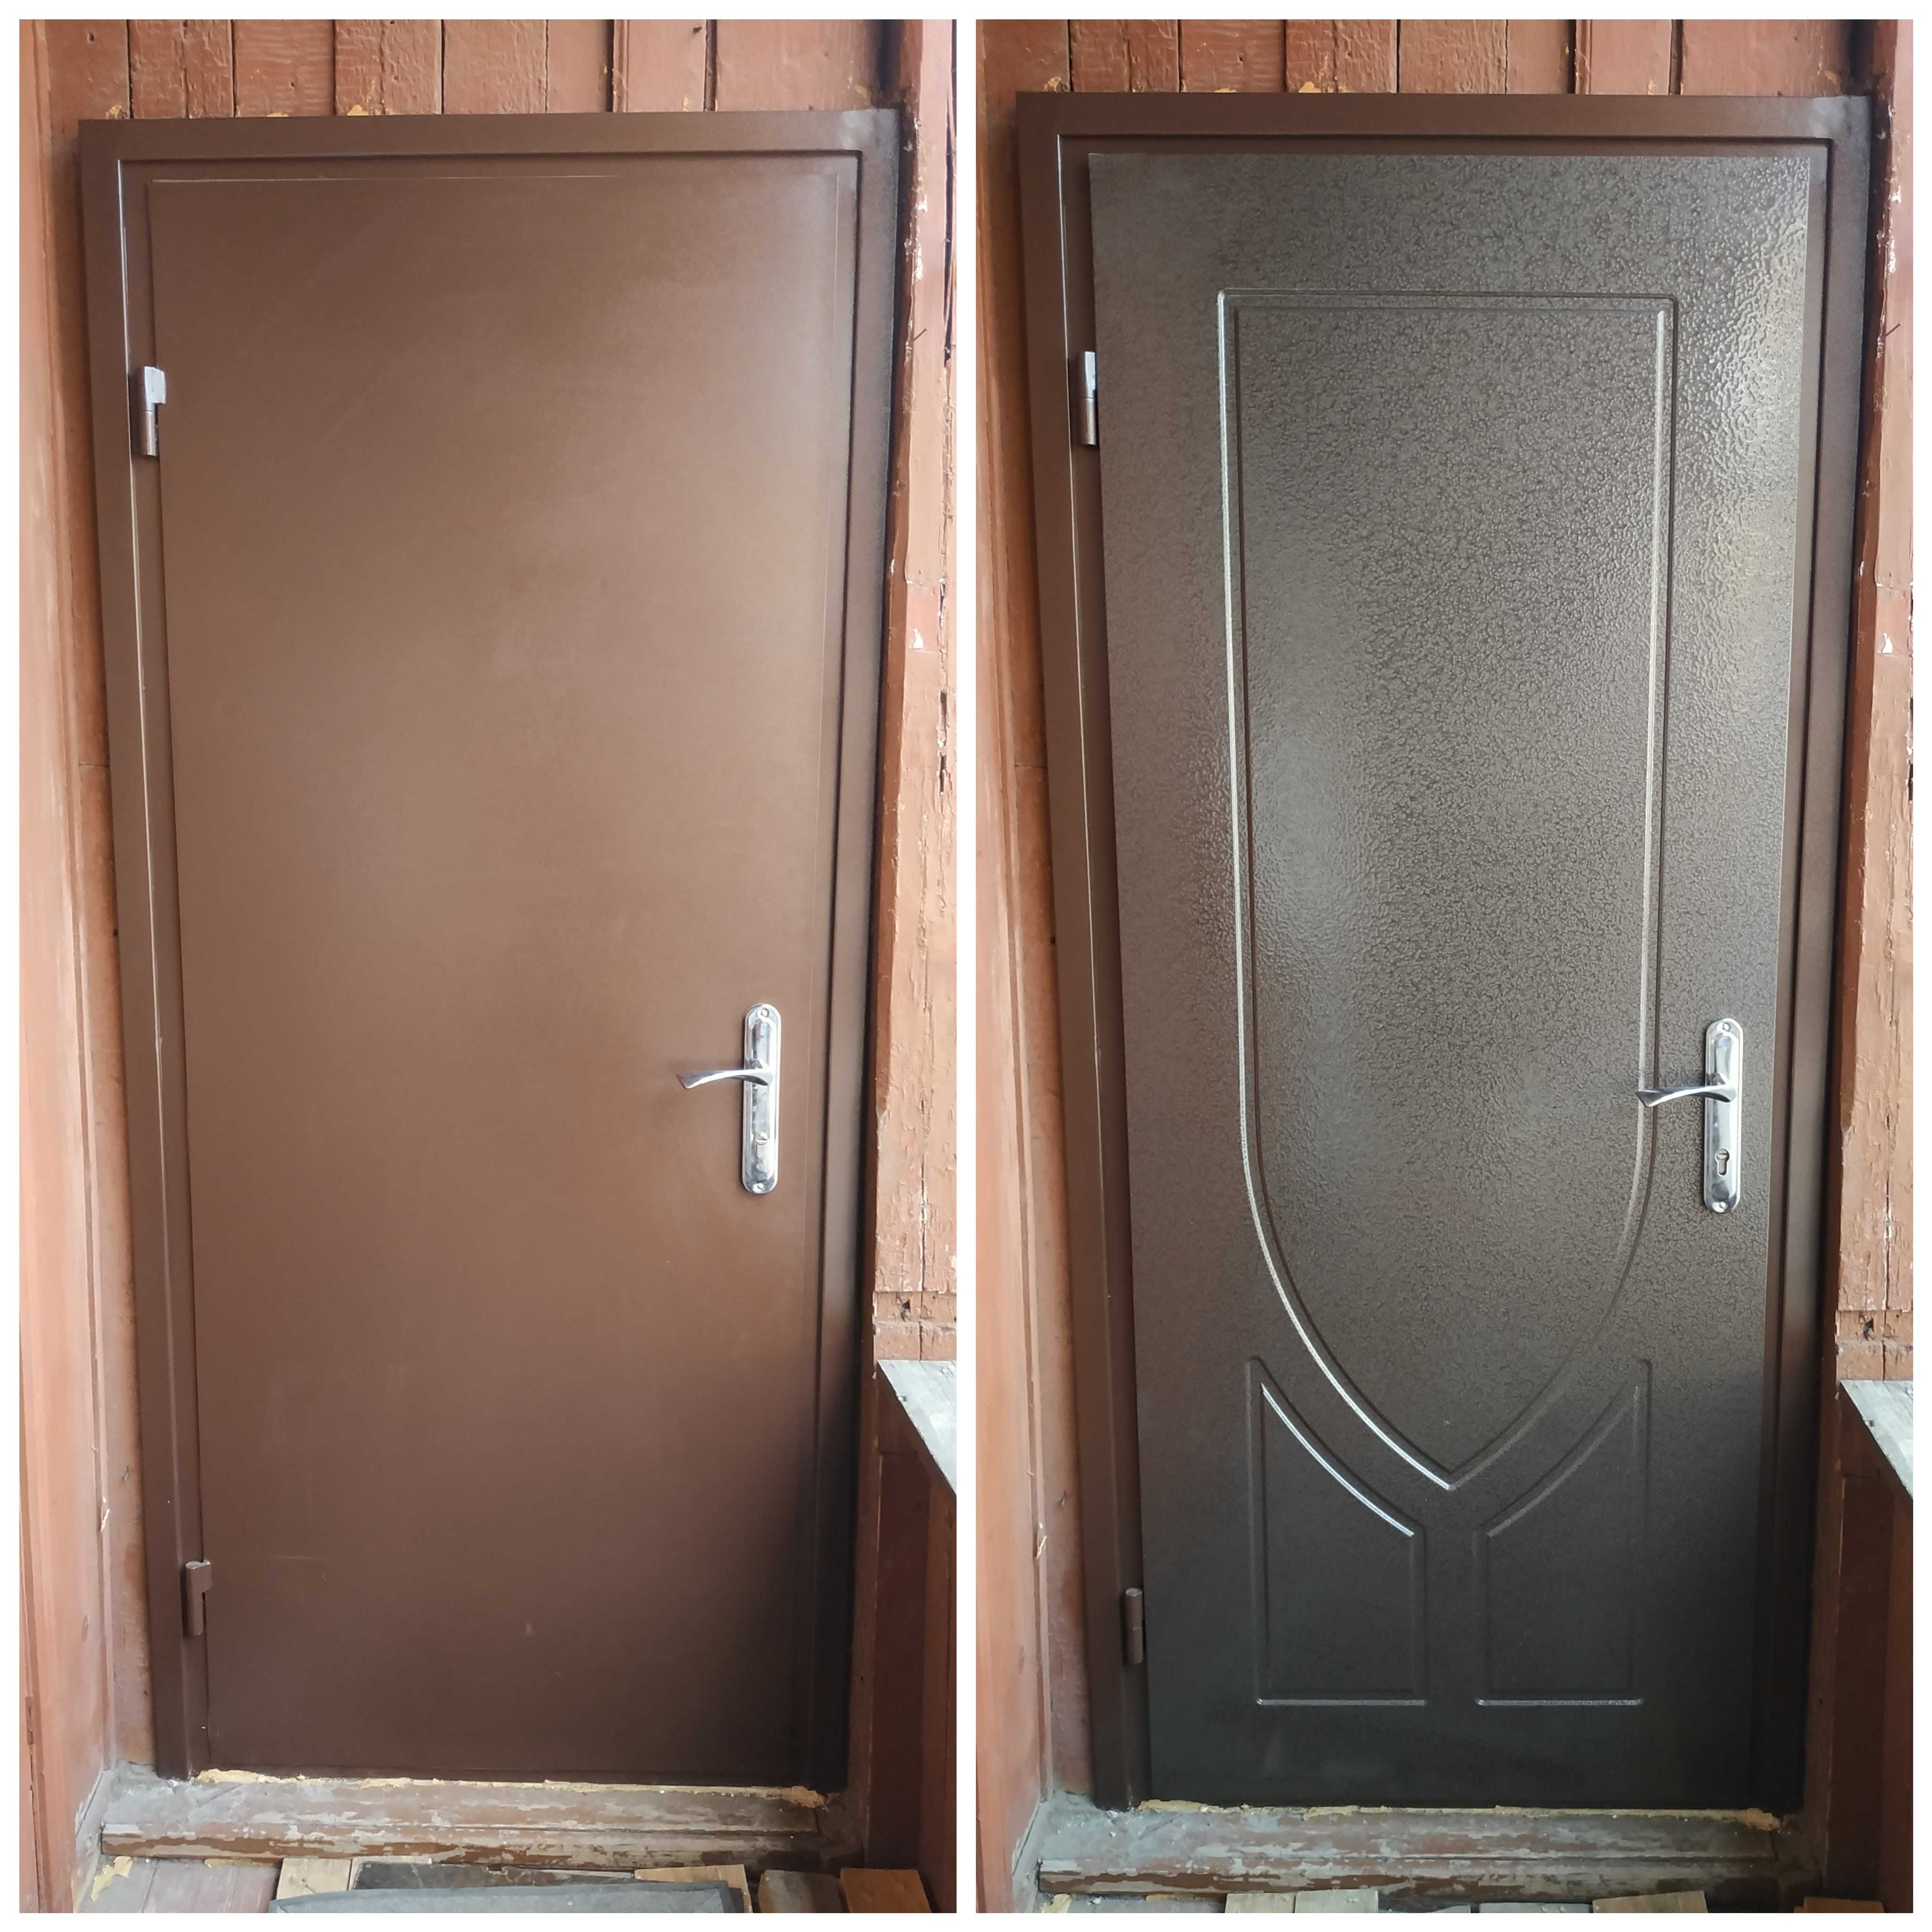 Реставрация дверей своими руками накладками из мдф: преимущества материала и монтаж